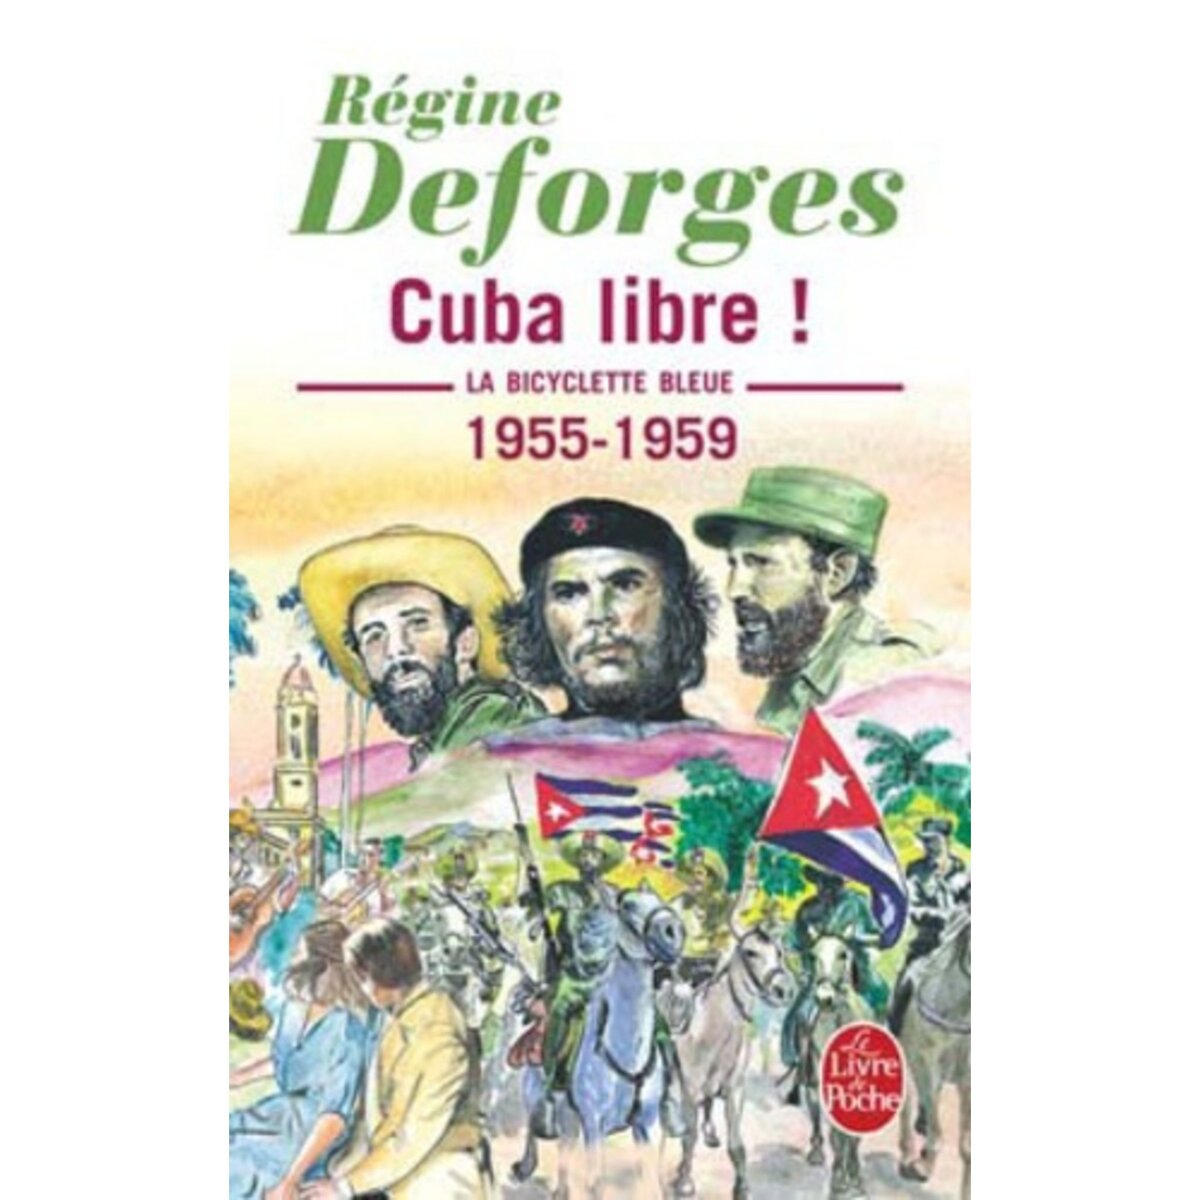  LA BICYCLETTE BLEUE TOME 7 : CUBA LIBRE ! . 1955-1959, Deforges Régine